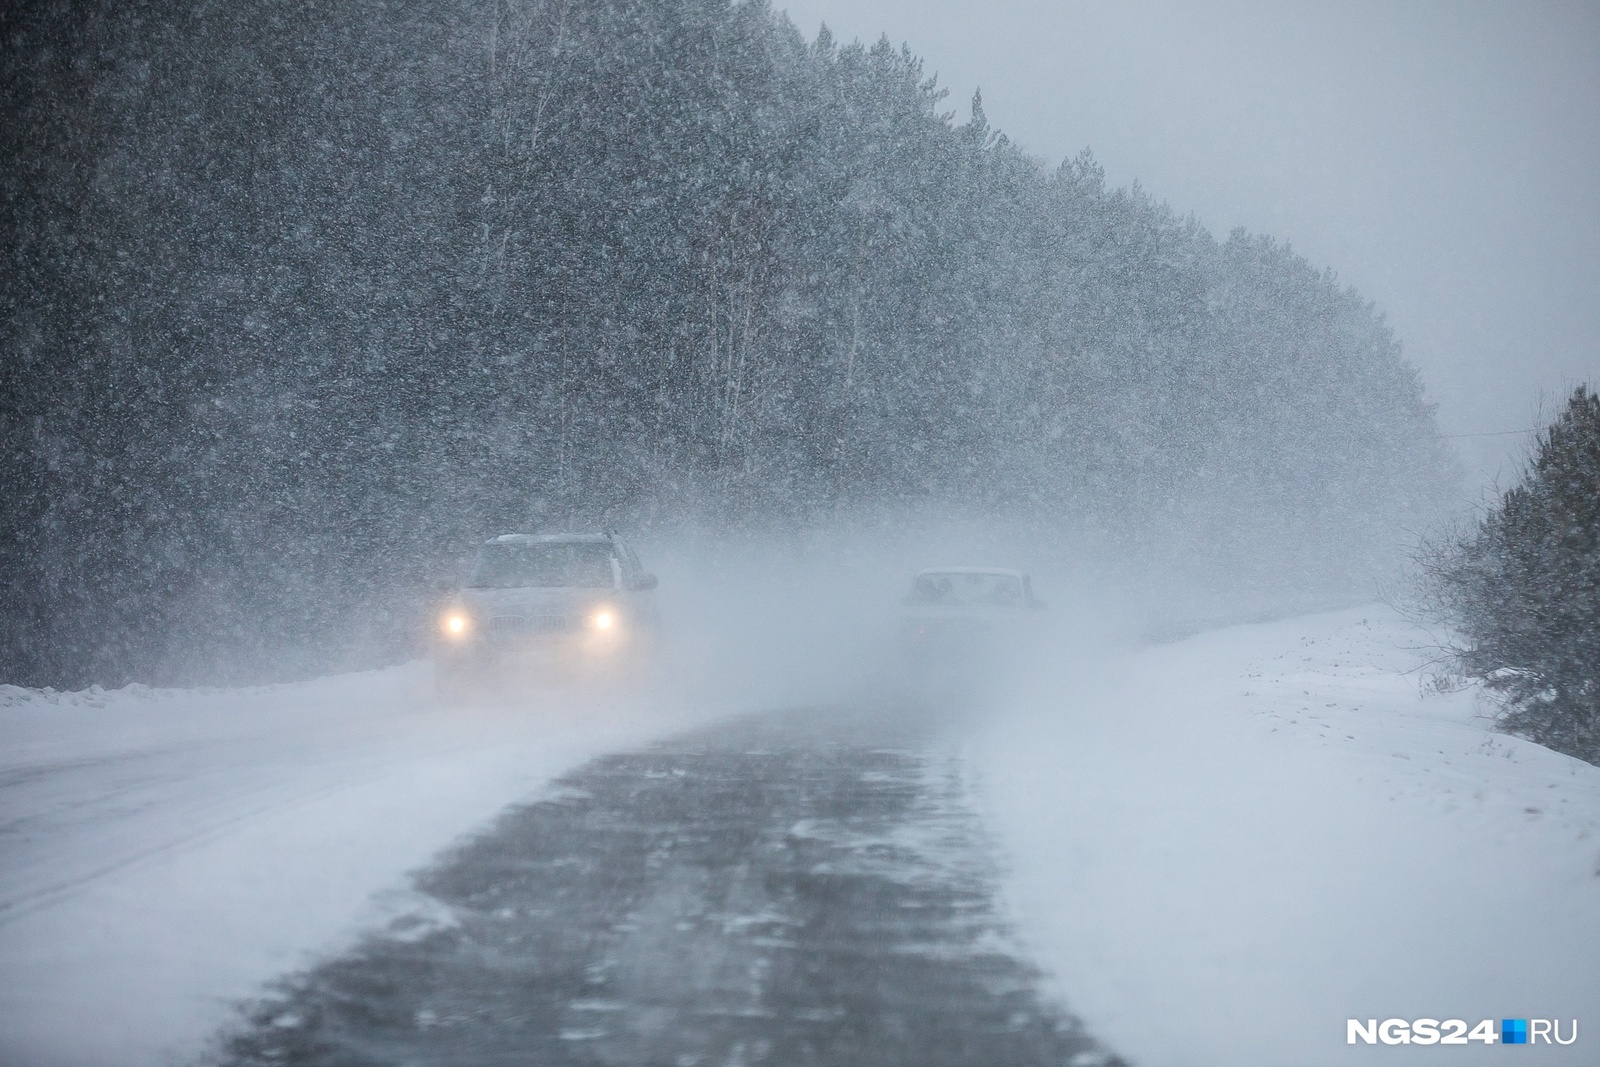 Госавтоинспекция Башкортостана предупреждает водителей о неблагоприятных погодных условиях.